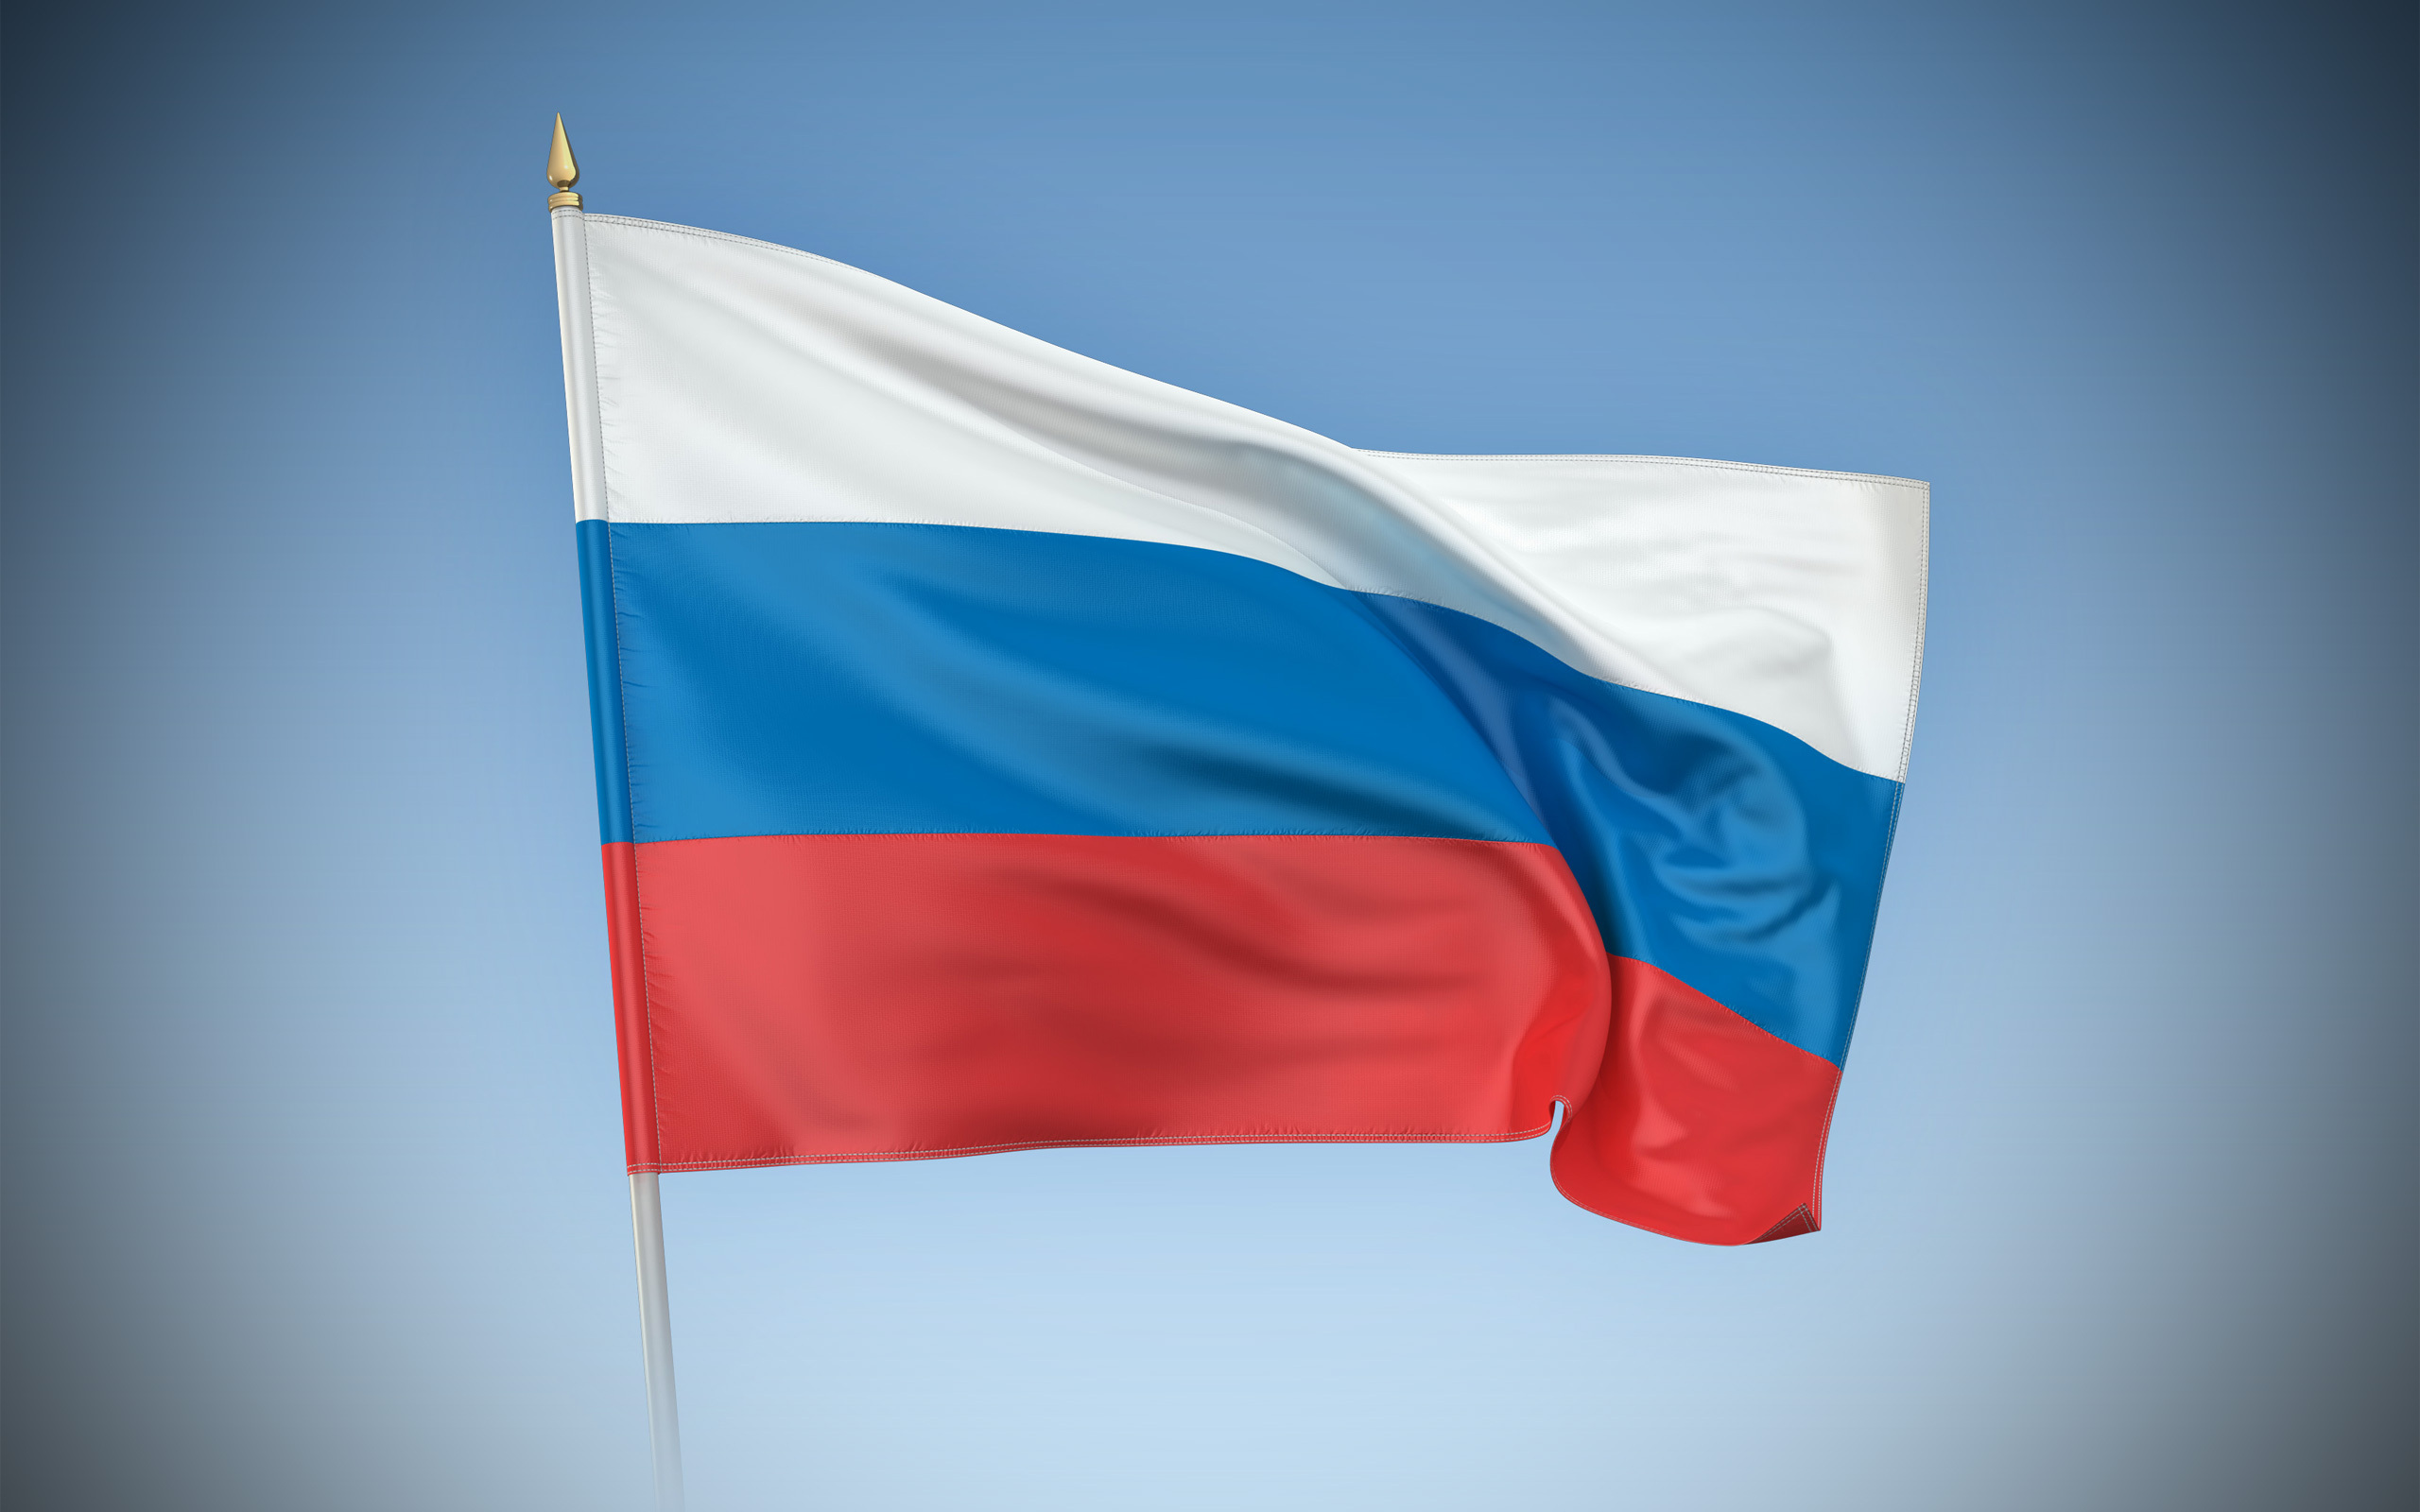 Как выглядит флаг картинка. Флаг РФ. Ф̆̈л̆̈ӑ̈г̆̈ р̆̈о̆̈с̆̈с̆̈й̈й̈. Флаг Российской Федерации Триколор. Развеваюшийся флаг Российской Федерации.